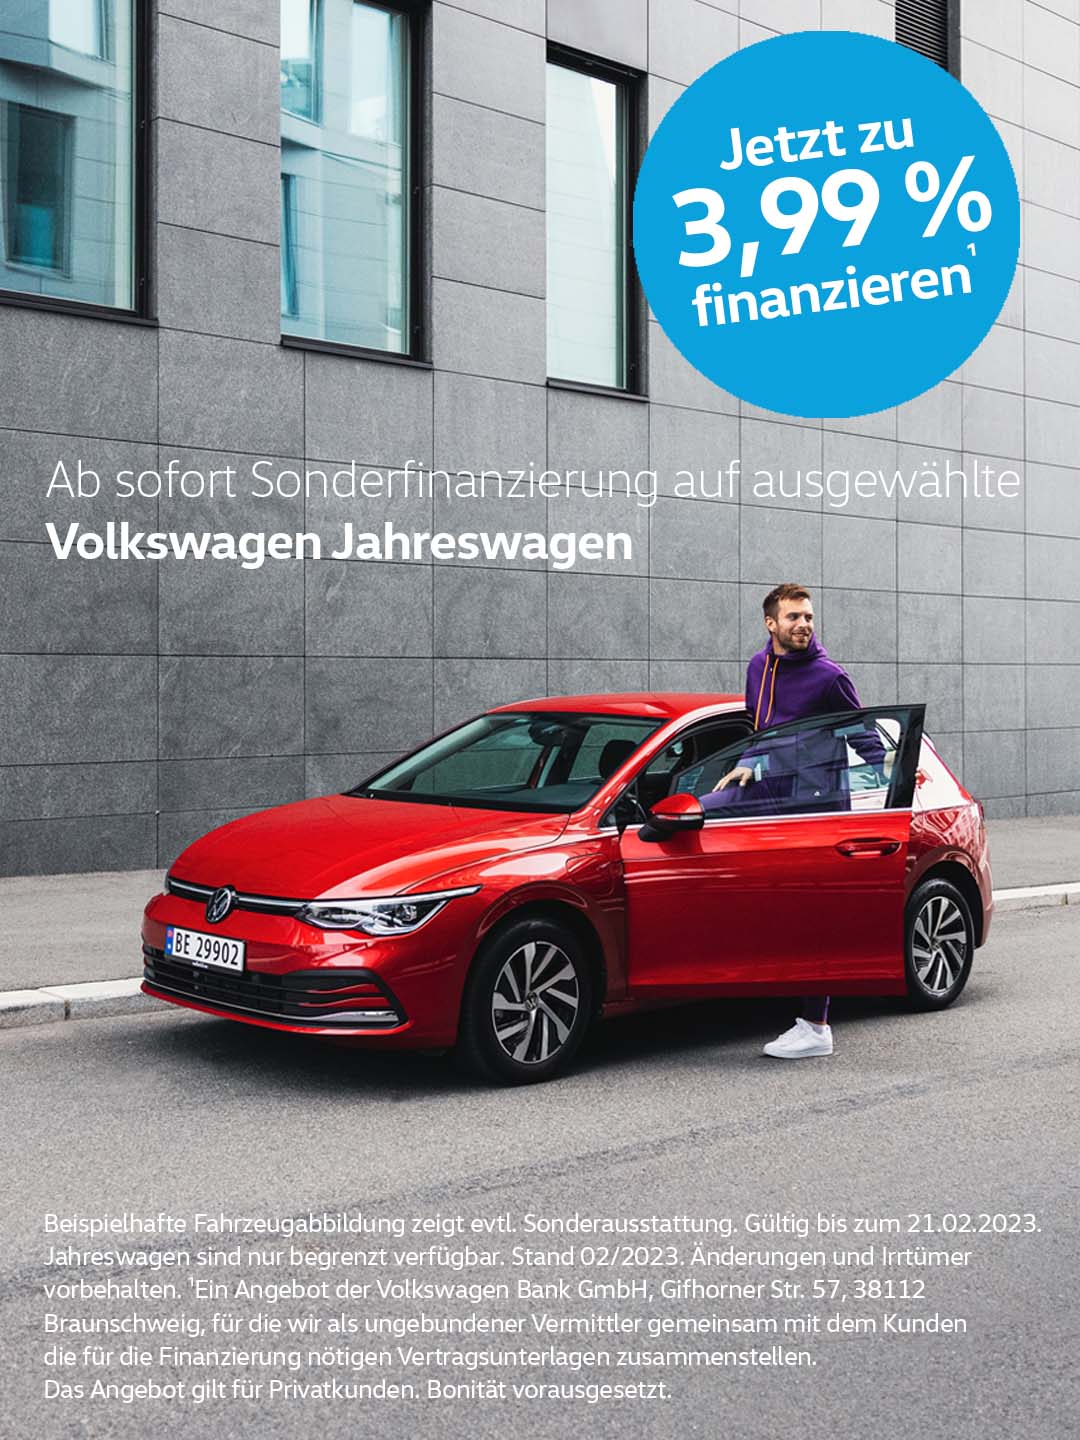 Volkswagen Jahreswagen Sonderfinanzierung 3,99 %